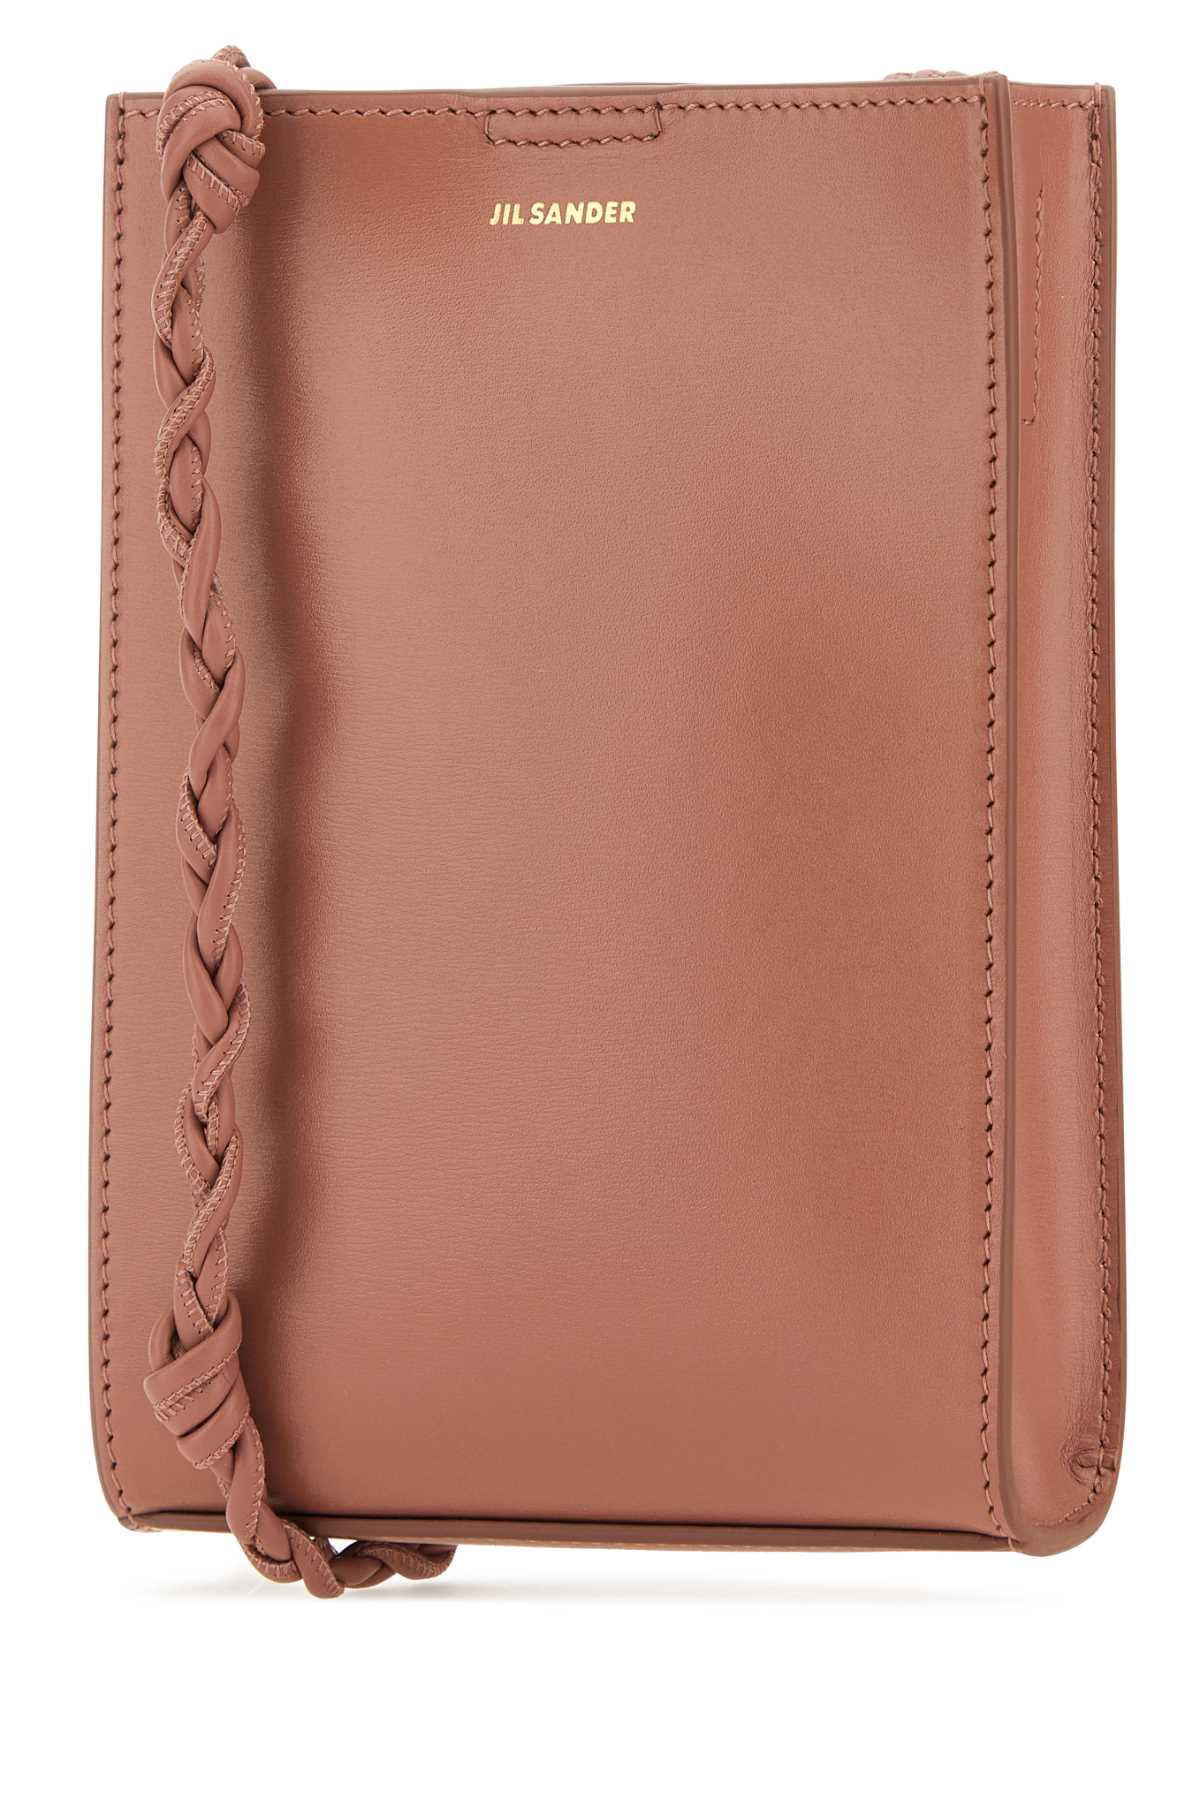 Jil Sander Dark Pink Leather Small Tangle Shoulder Bag In 904